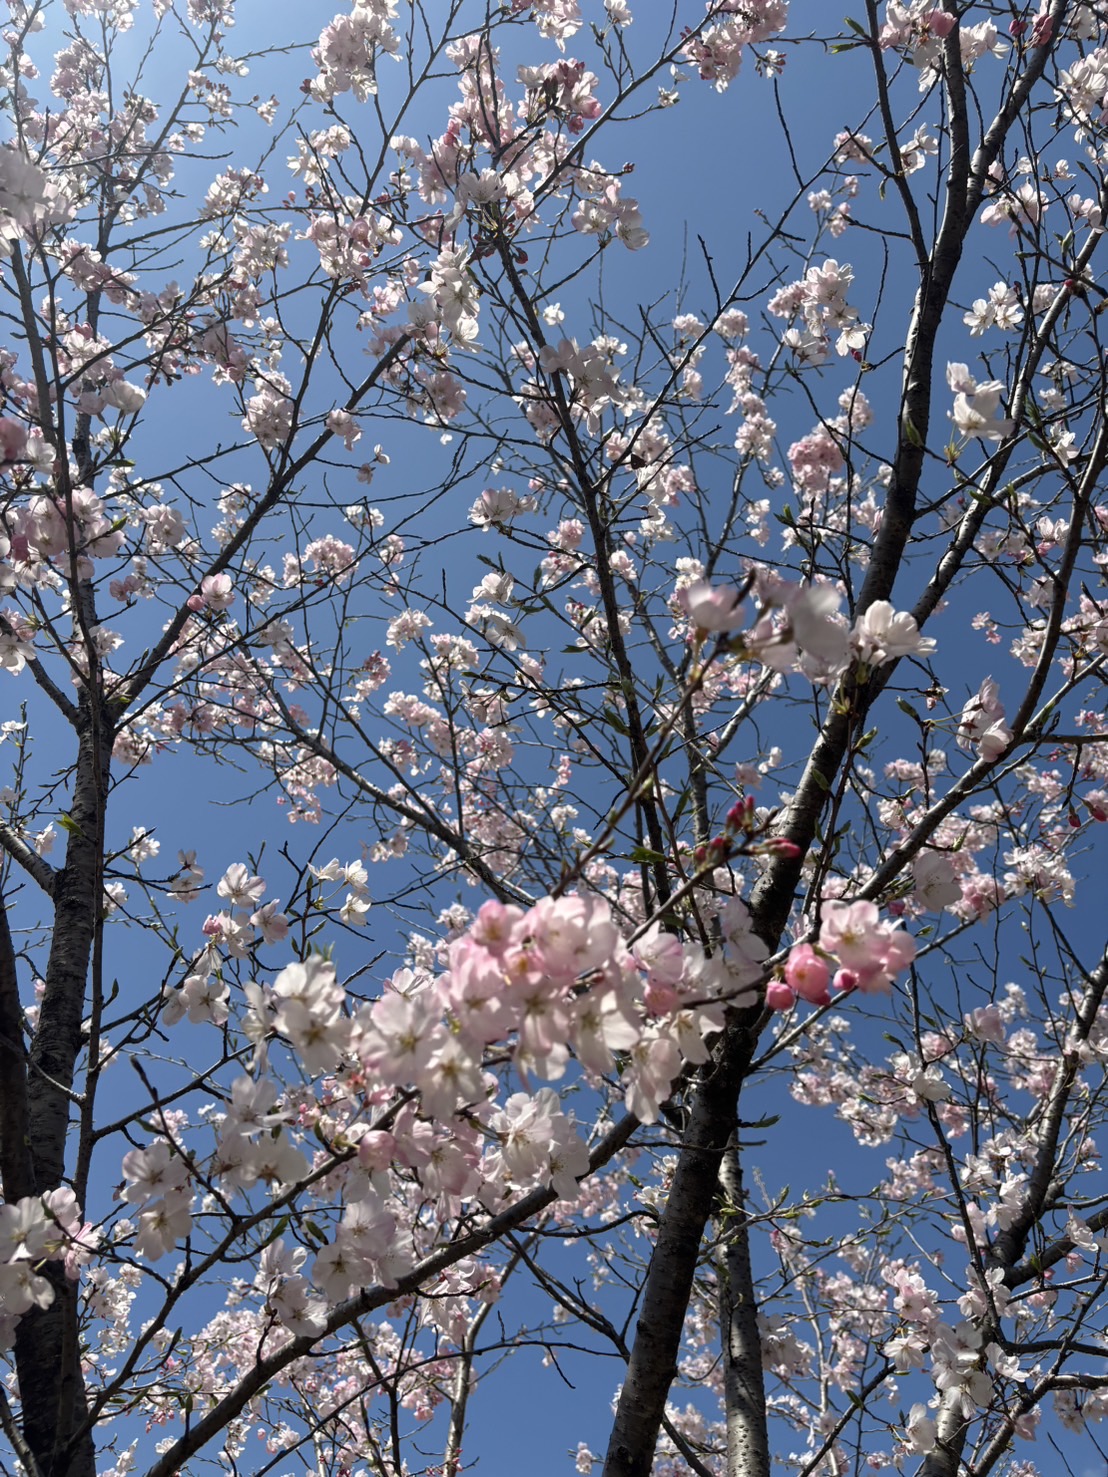 向井です(*^^*)

桜終の画像